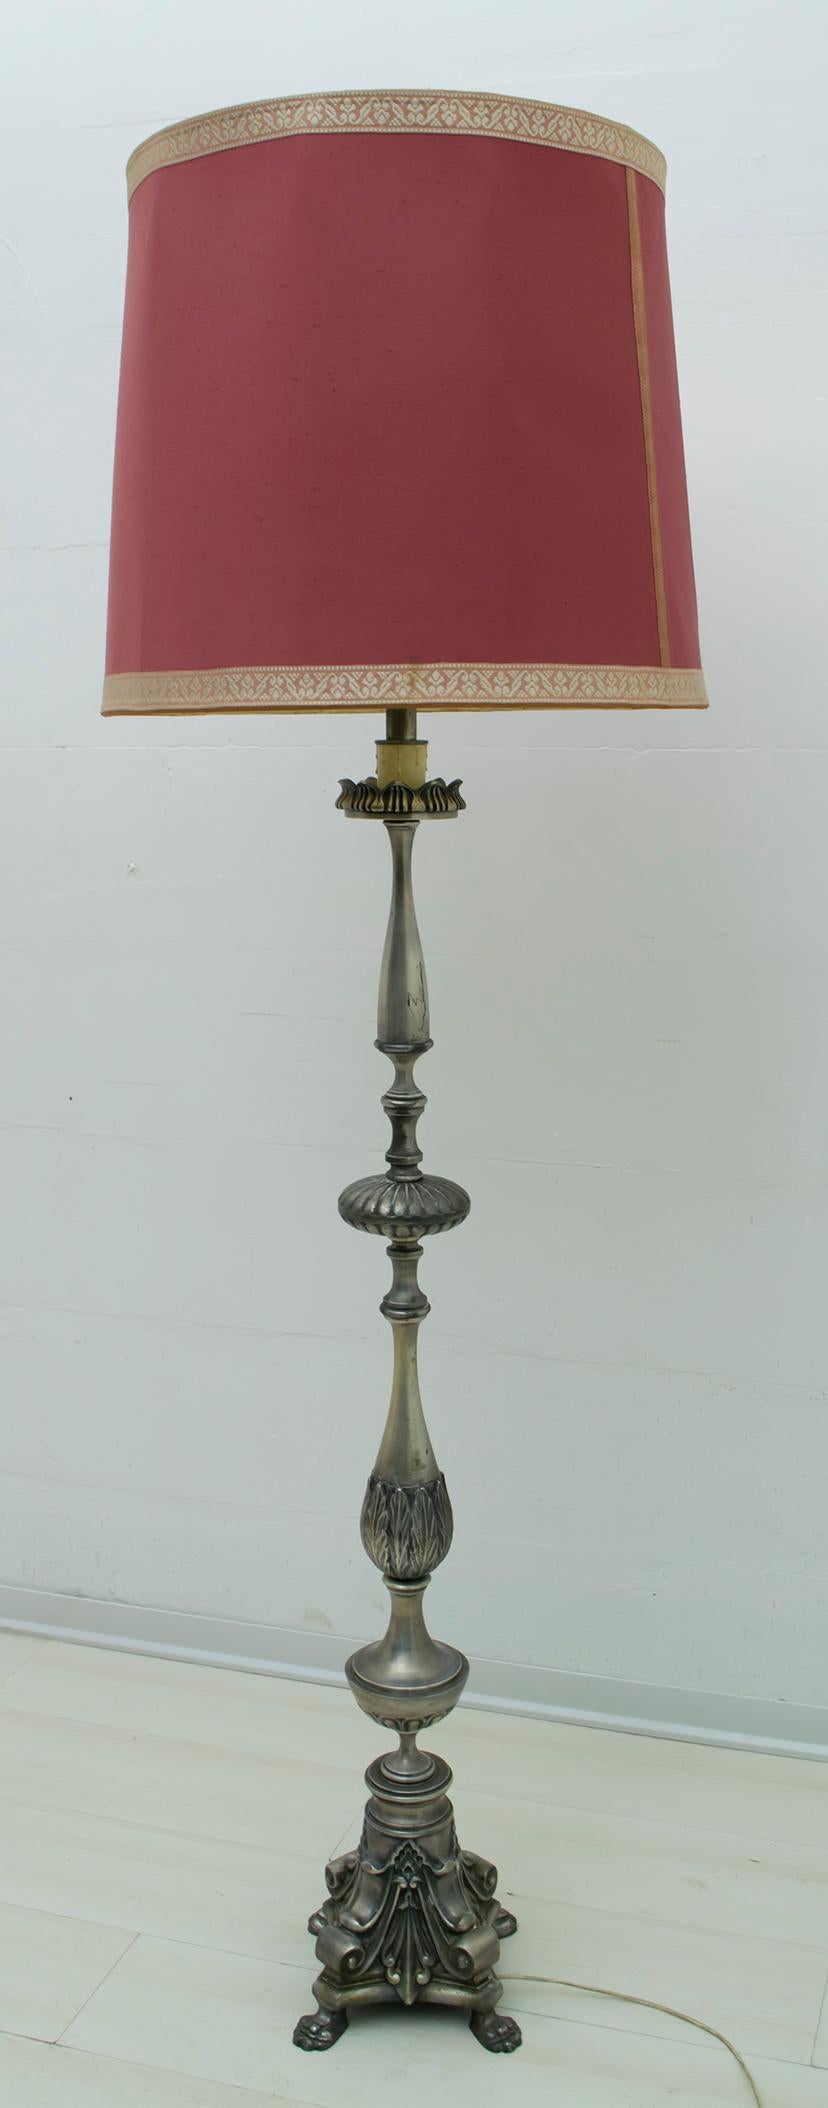 Diese schöne Stehlampe aus versilbertem Messing wurde in Italien im neoklassischen Stil hergestellt.

